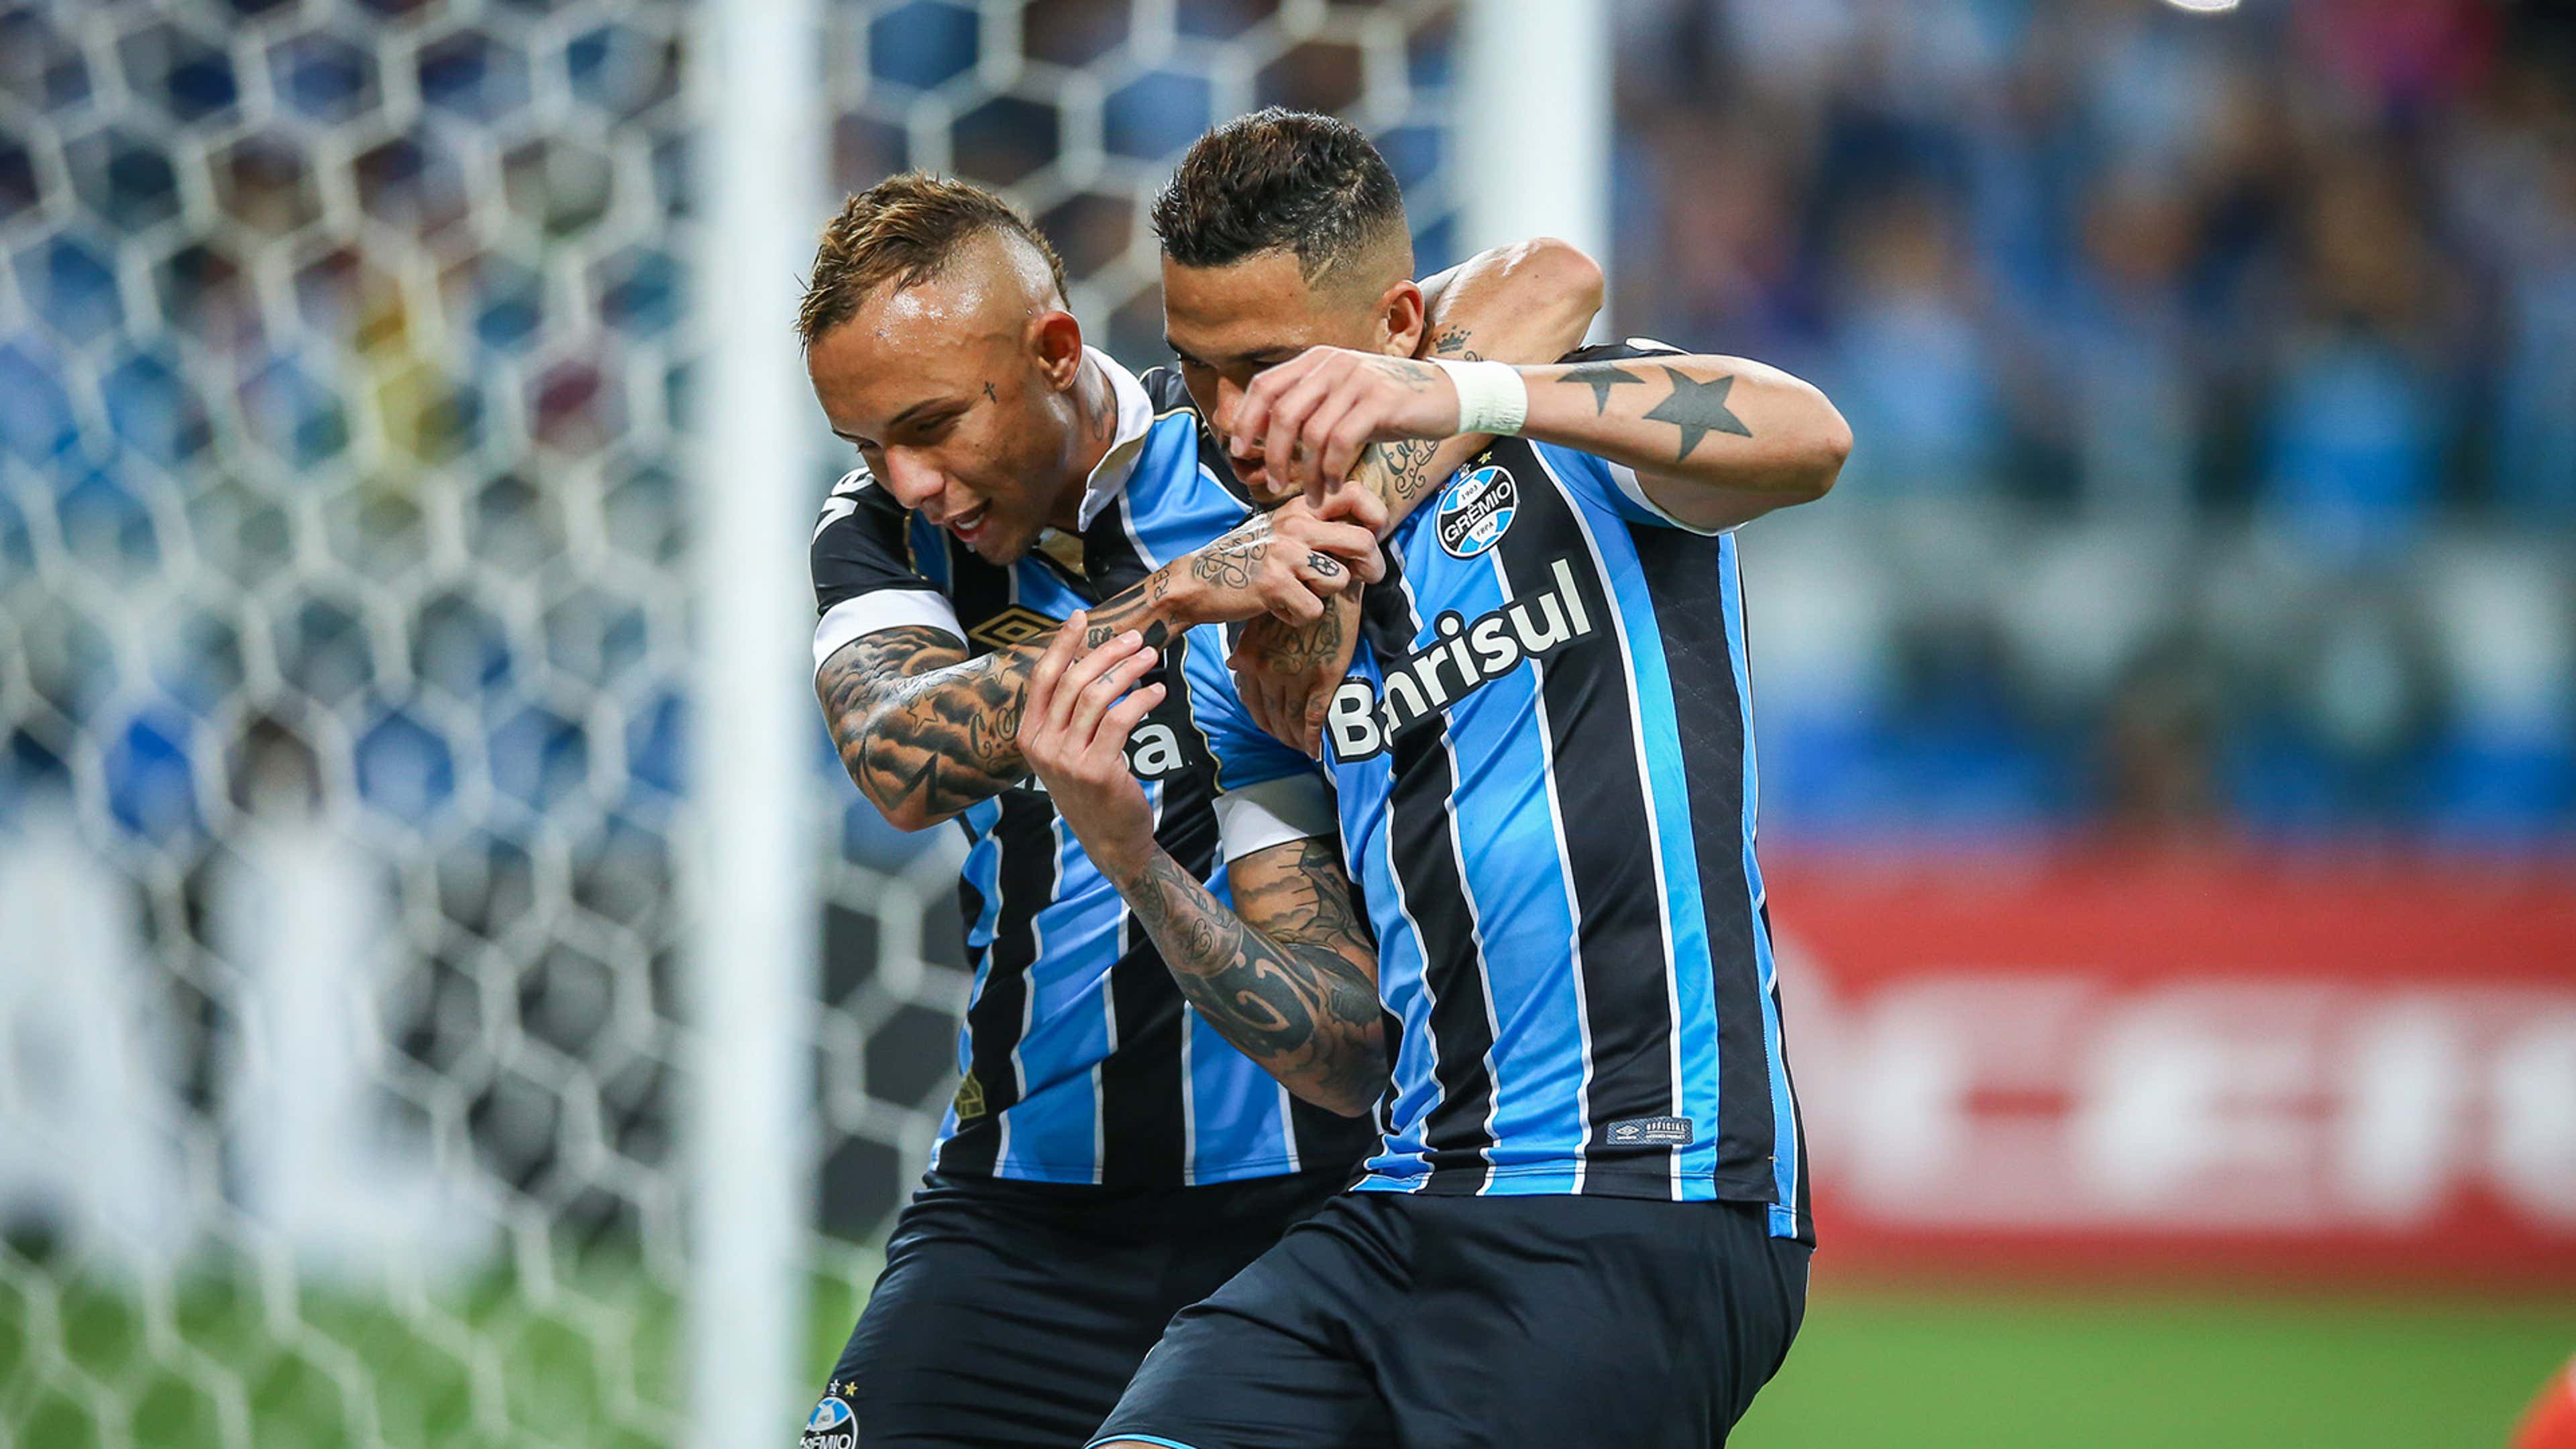 Everton Cebolinha Luciano Grêmio São Paulo Brasileirão 01 12 2019